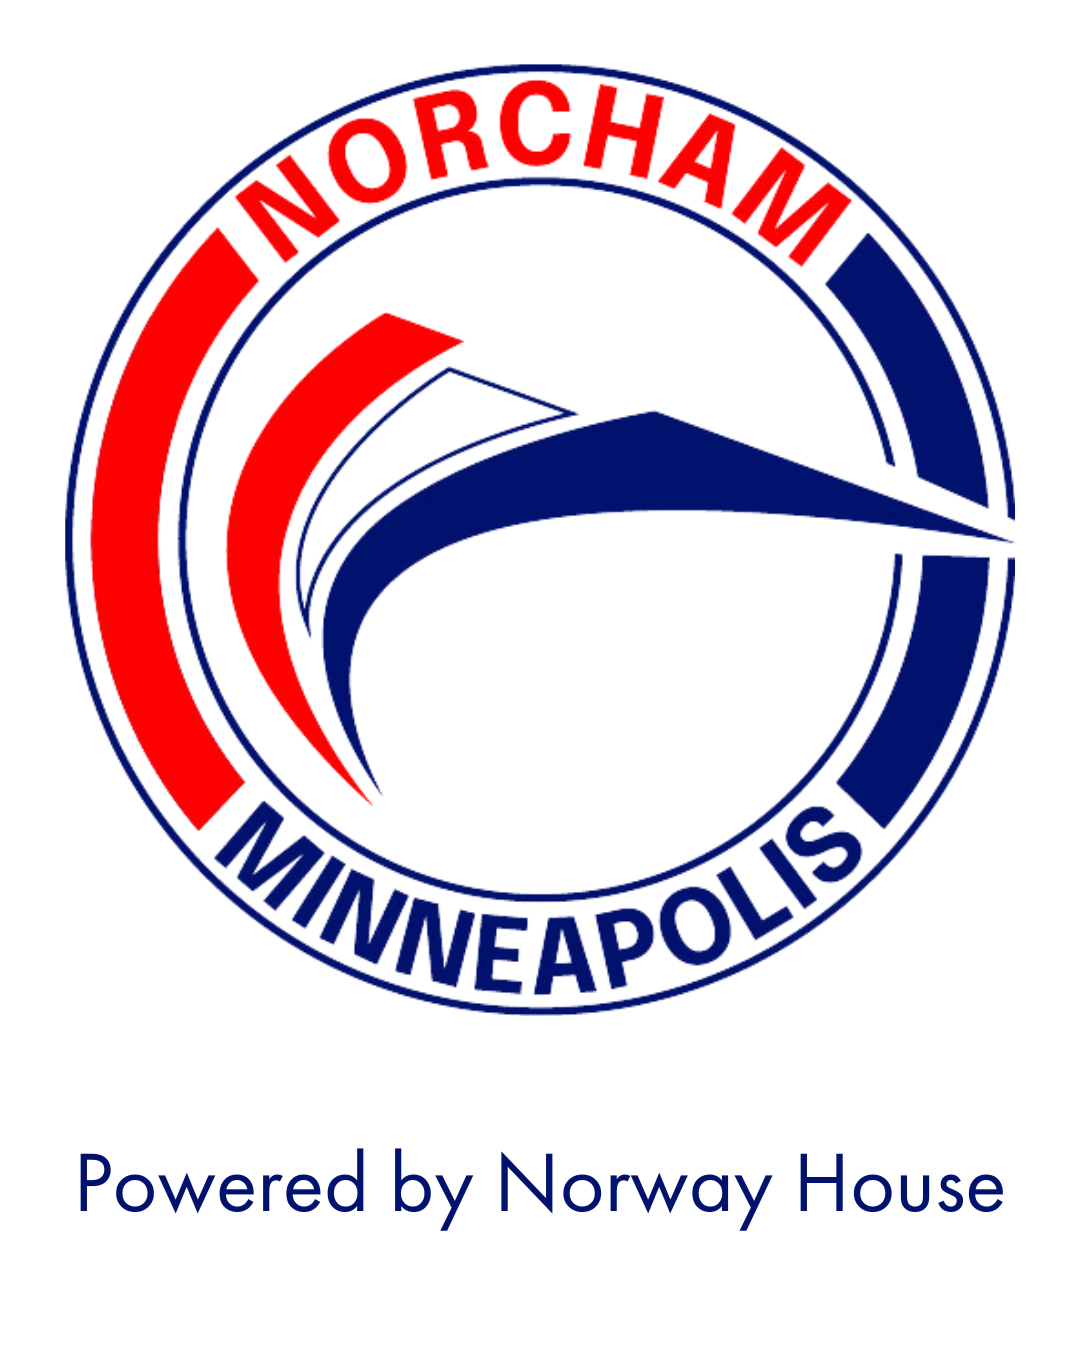 NorCham Minneapolis